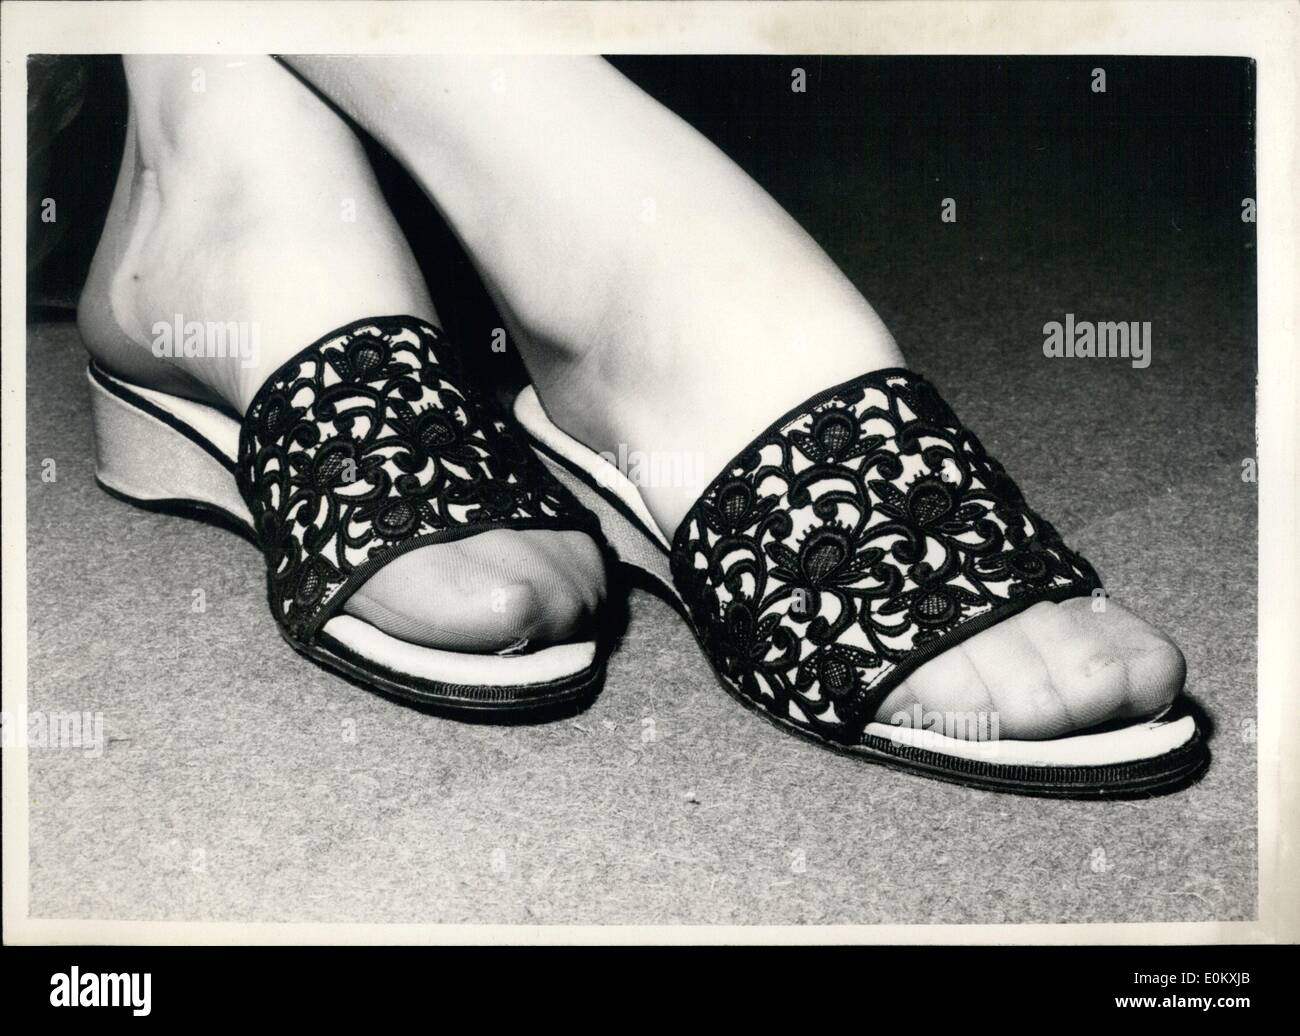 Ottobre 10, 1952 - Nuovi stili in calzature in mostra a Londra. Lo stile per il TV hostess. La foto mostra un TV Hostess mulo di pizzo nero su raso rosa è uno dei nuovi stili di scarpa in mostra presso il Washington Hotel, Londra, oggi. Foto Stock